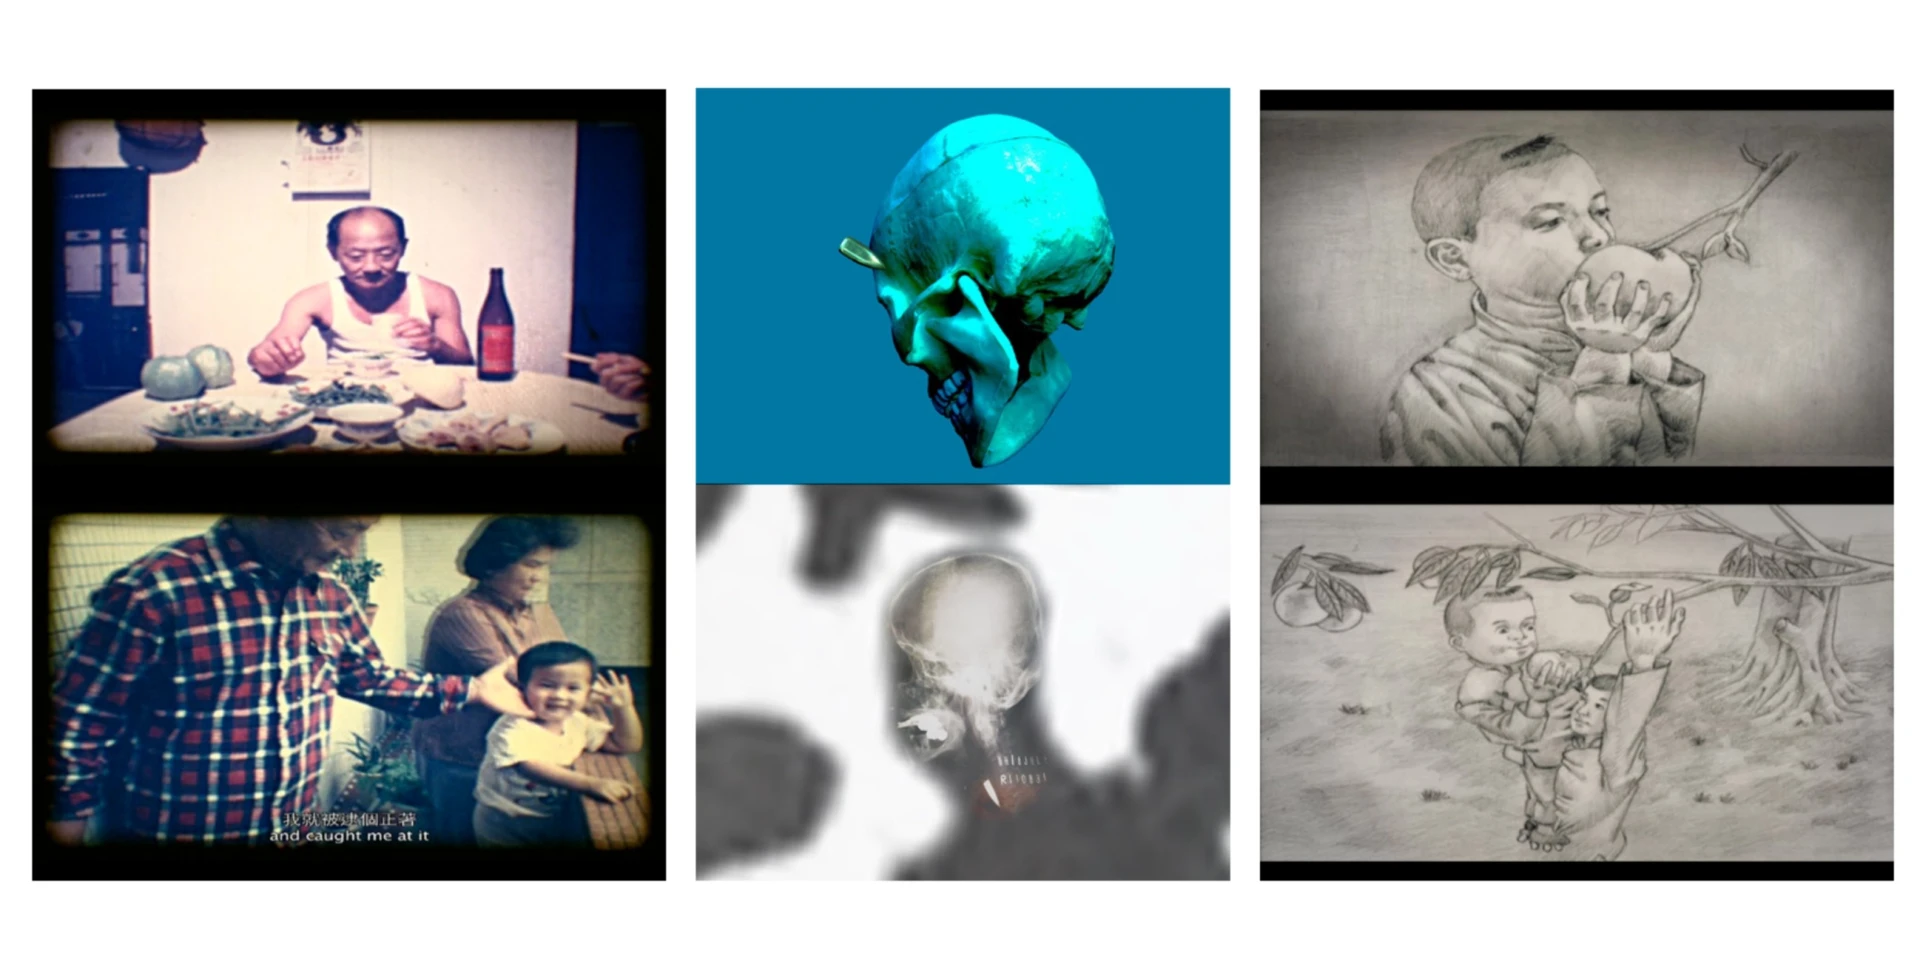 《逆旅的三段航程》，2012，單頻錄像電影，台北市立美術館收藏；作品片長41分鐘，由完成於不同時間點的三部影片所構成；分別為1987年製作的8釐米電影《家庭電影》（左）、2010年製作的幻燈簡報電影《人肉的滋味》（中）， 與2012年鉛筆繪製的動畫短片《喂！醒醒！小死孩子》（右）；參展北美館「2012台北雙年展」-圖片